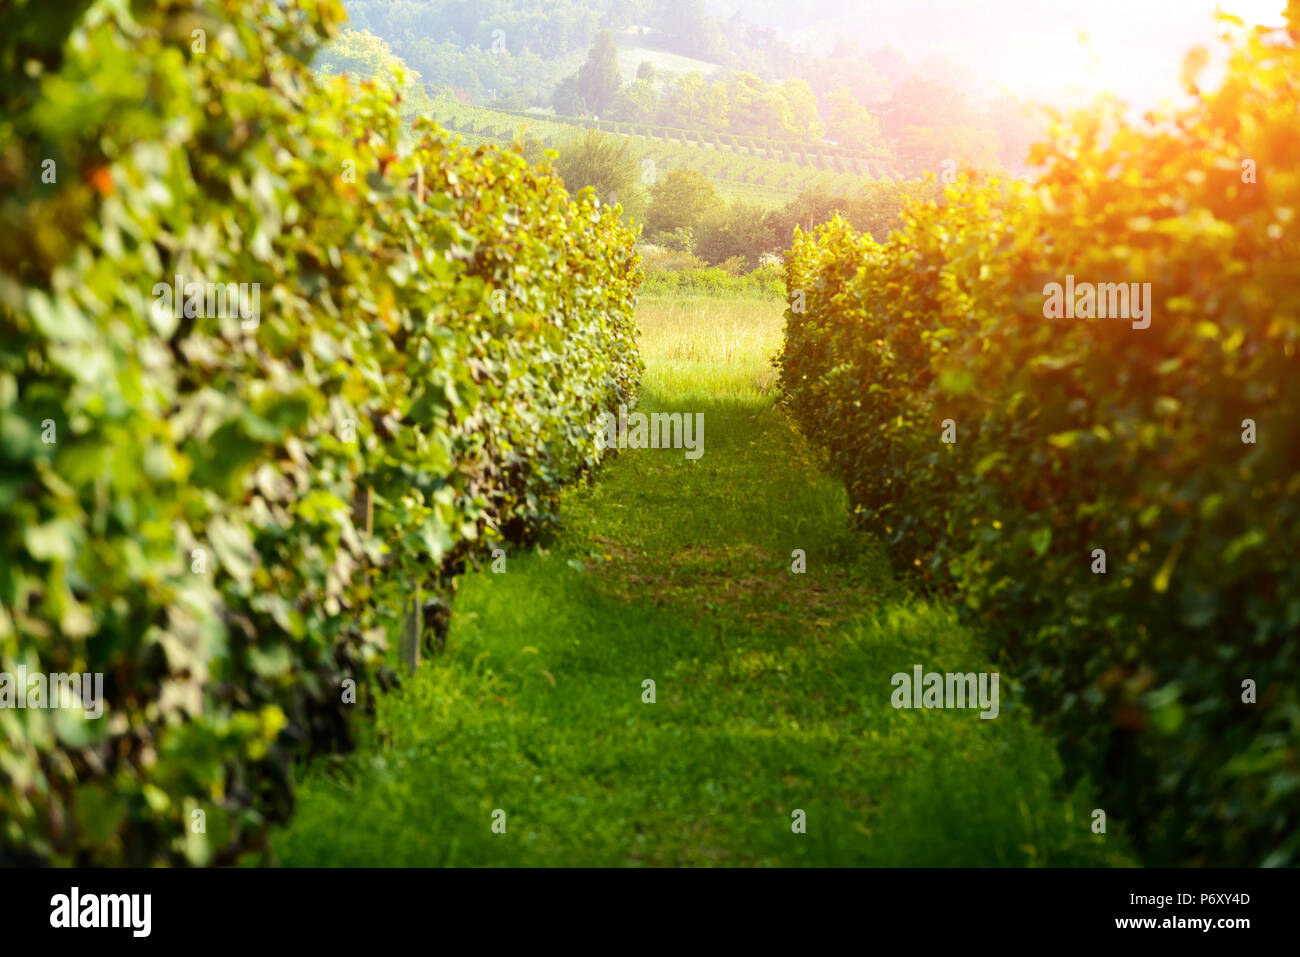 Fantastische ländliche Landschaft mit grünen Weinberg Stockfoto